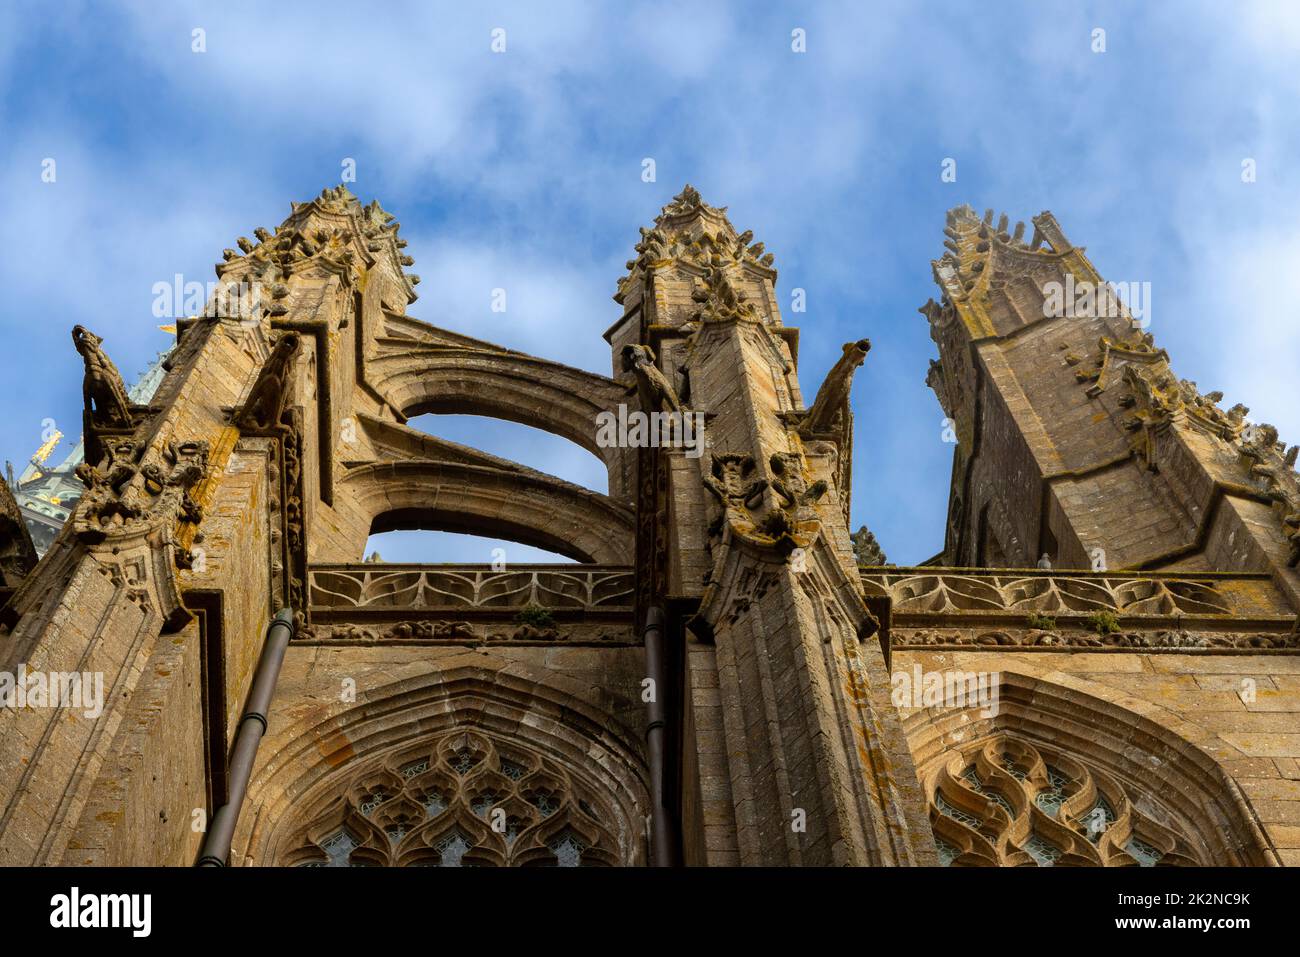 Pináculos y gárgolas corteados, detalles arquitectónicos de la abadía medieval de Le Mont Saint-Michel, Avranches, Normandía, Francia. Foto de stock